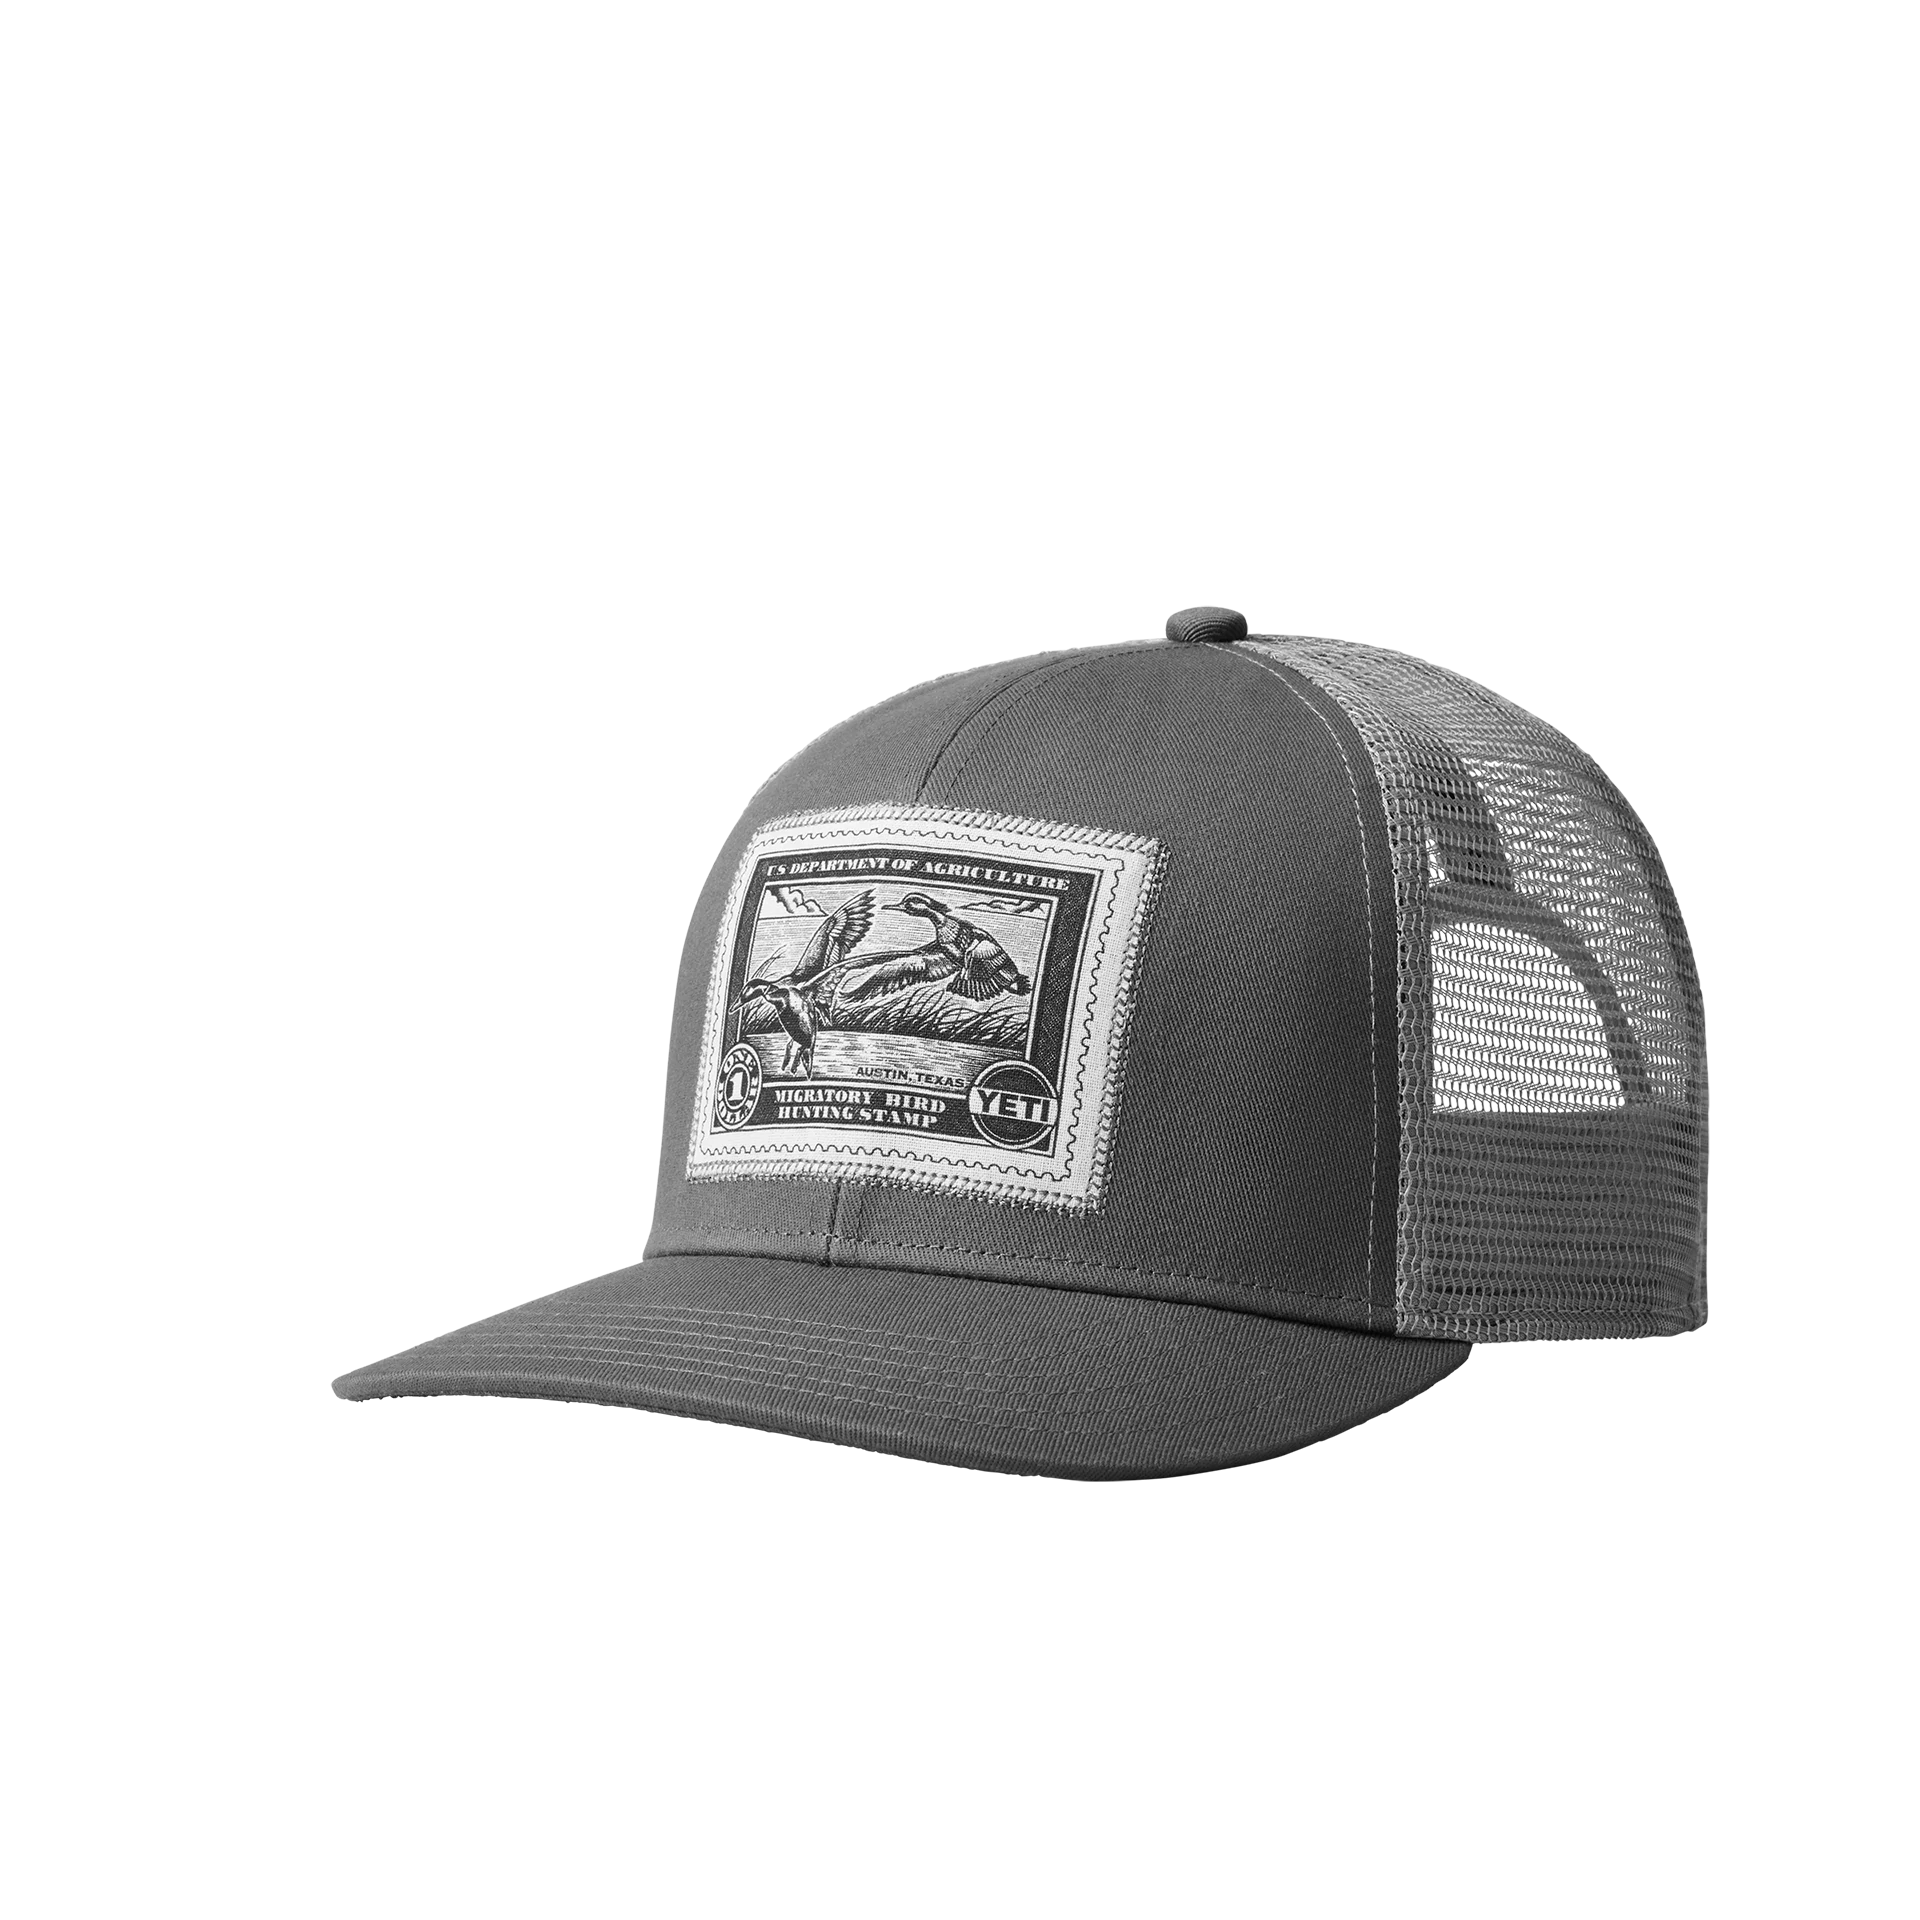 Duck Stamp Trucker Hat